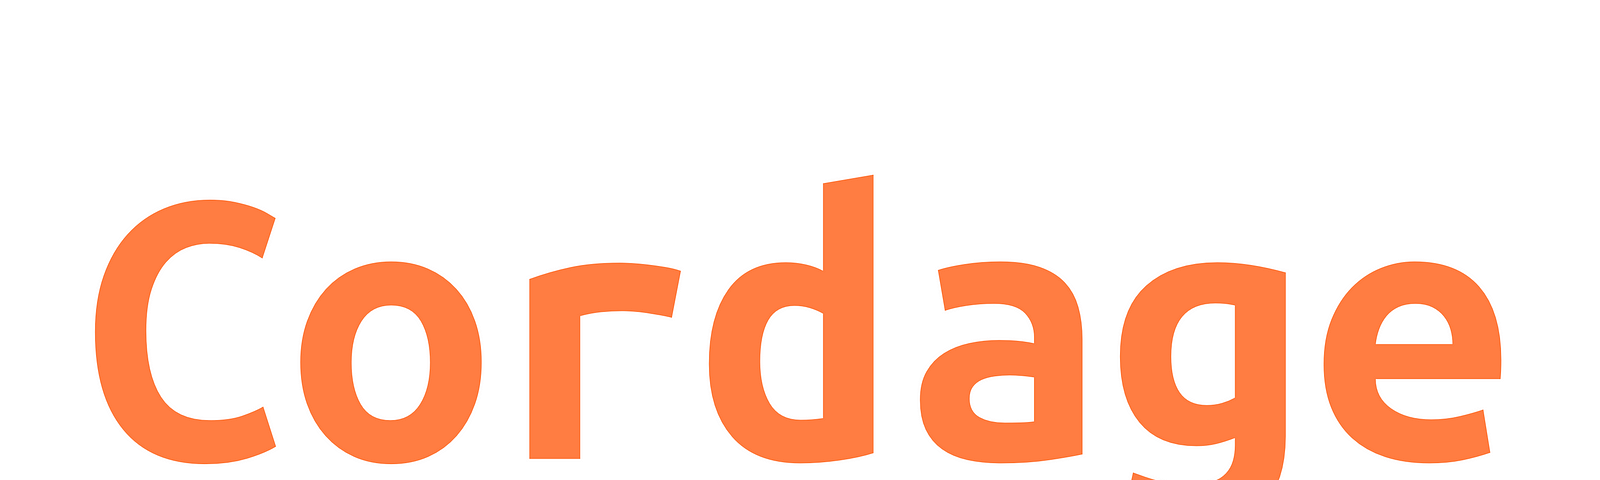 Cordage logo